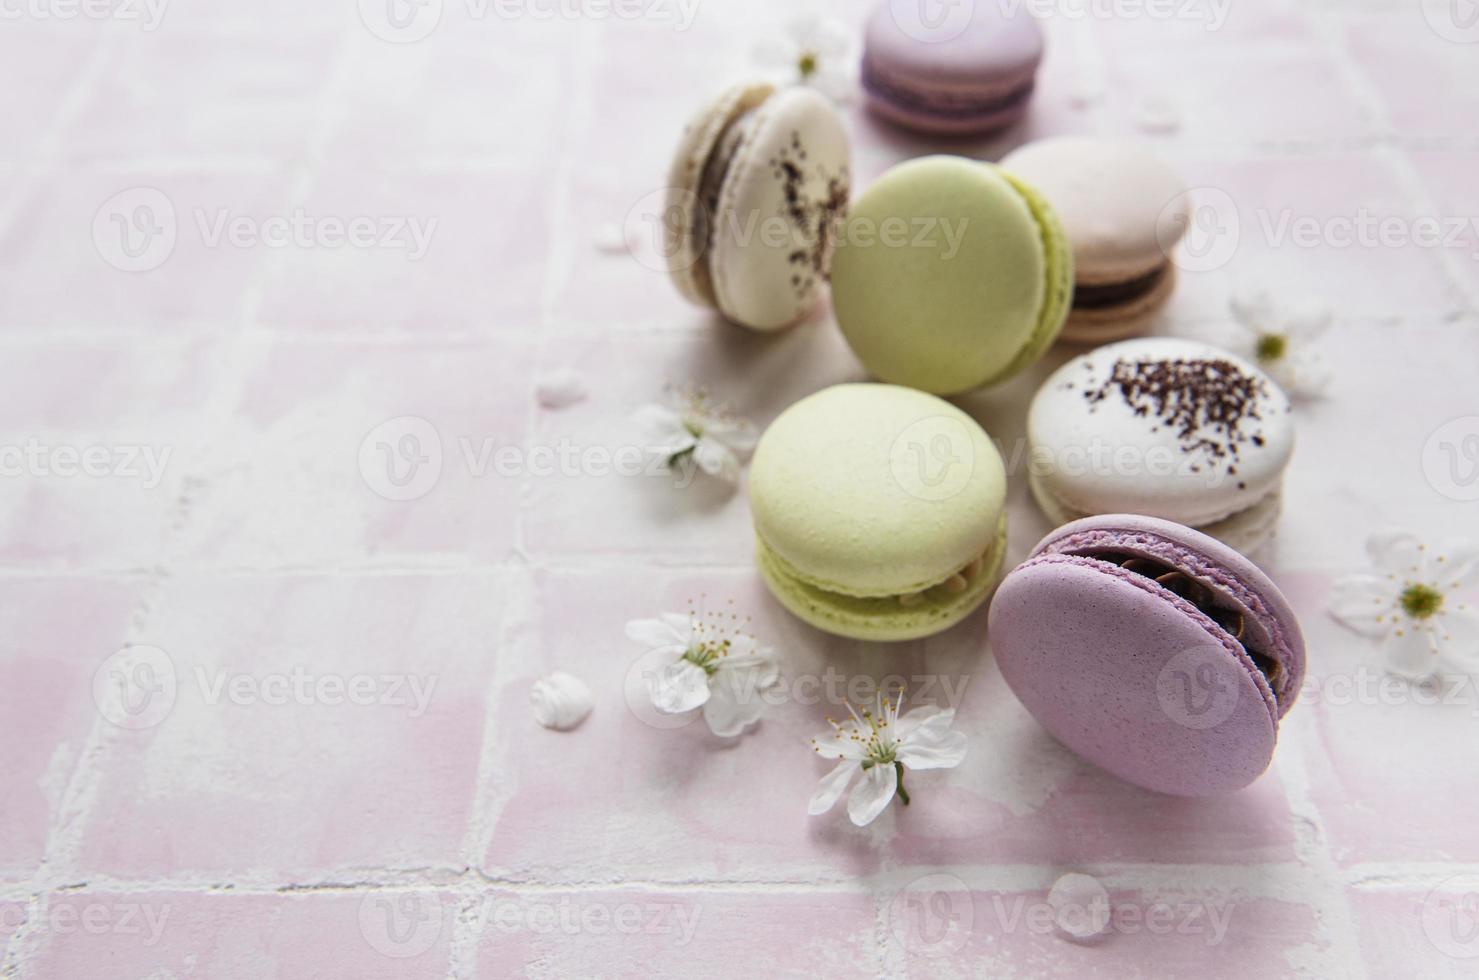 macarons français colorés photo